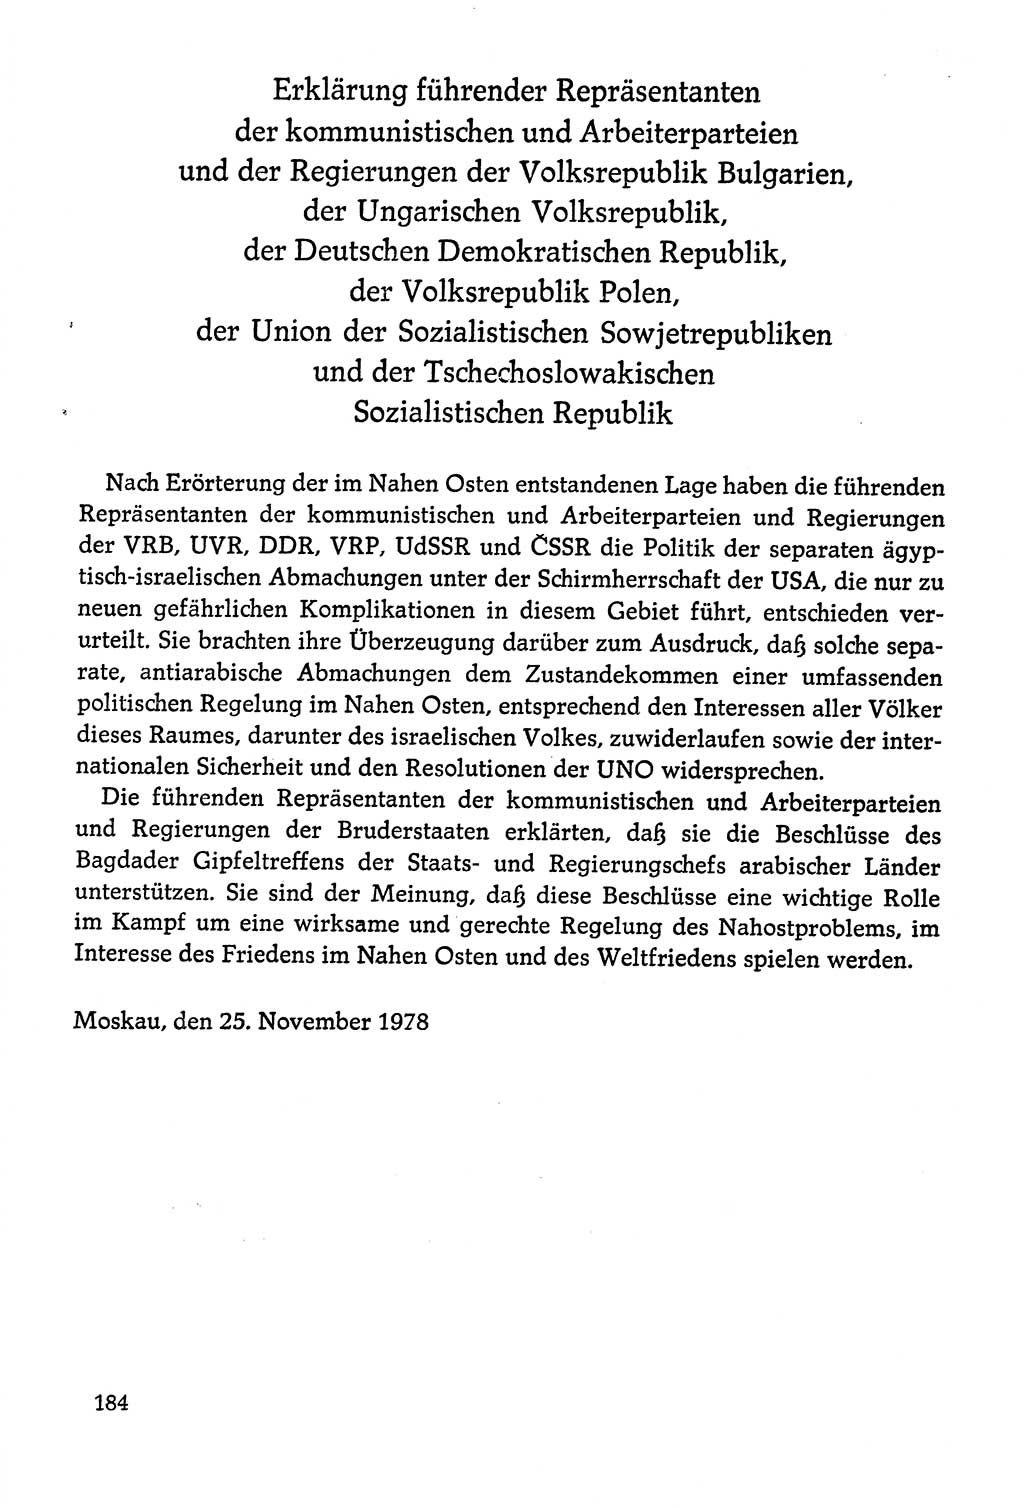 Dokumente der Sozialistischen Einheitspartei Deutschlands (SED) [Deutsche Demokratische Republik (DDR)] 1978-1979, Seite 184 (Dok. SED DDR 1978-1979, S. 184)